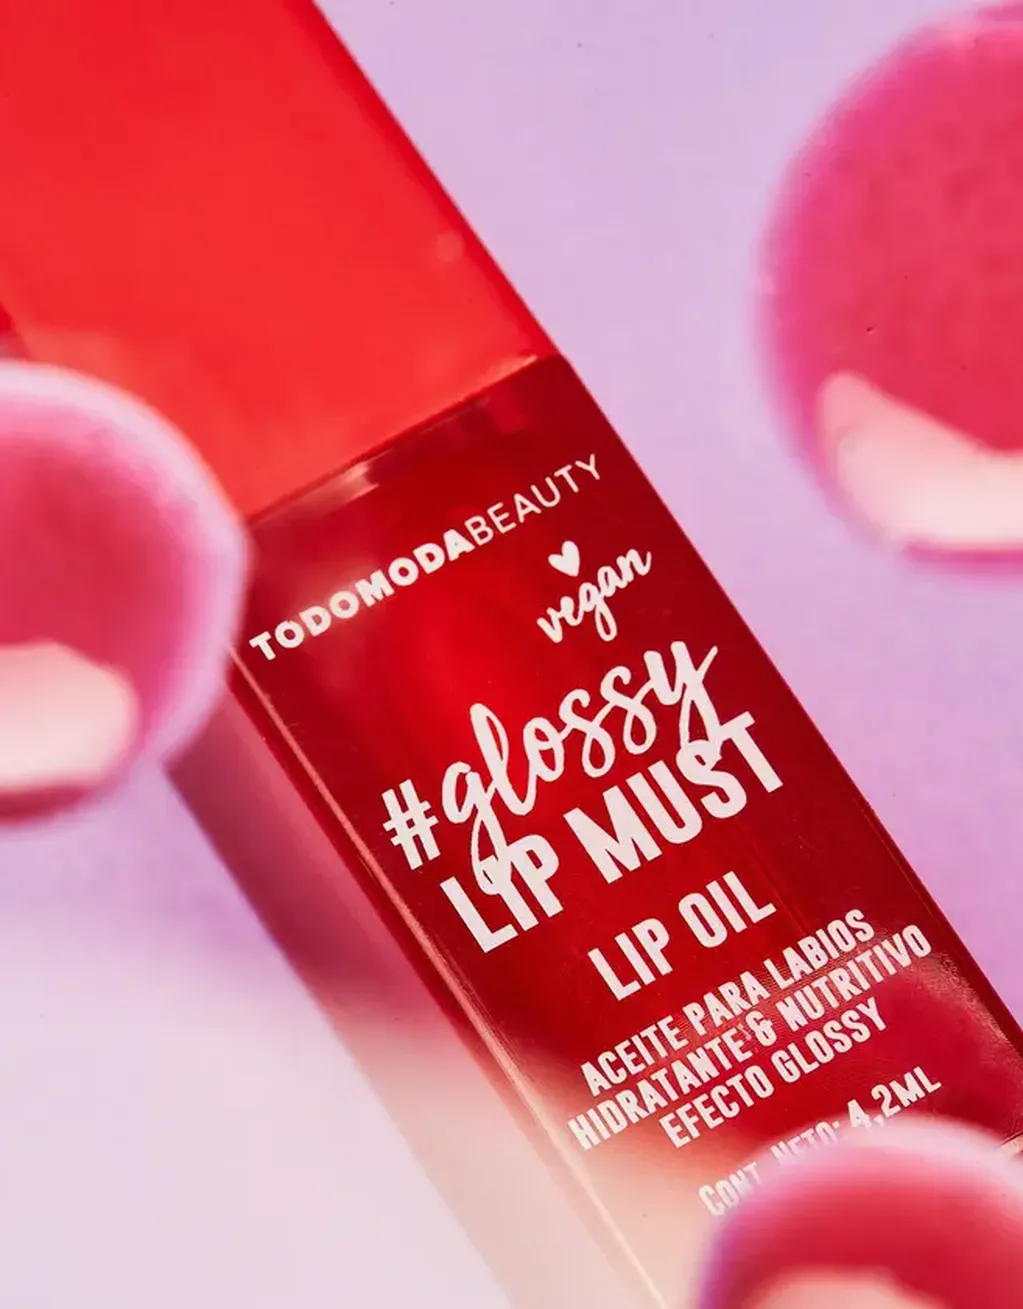 Glossy Lip Must, Todo Moda Beauty.